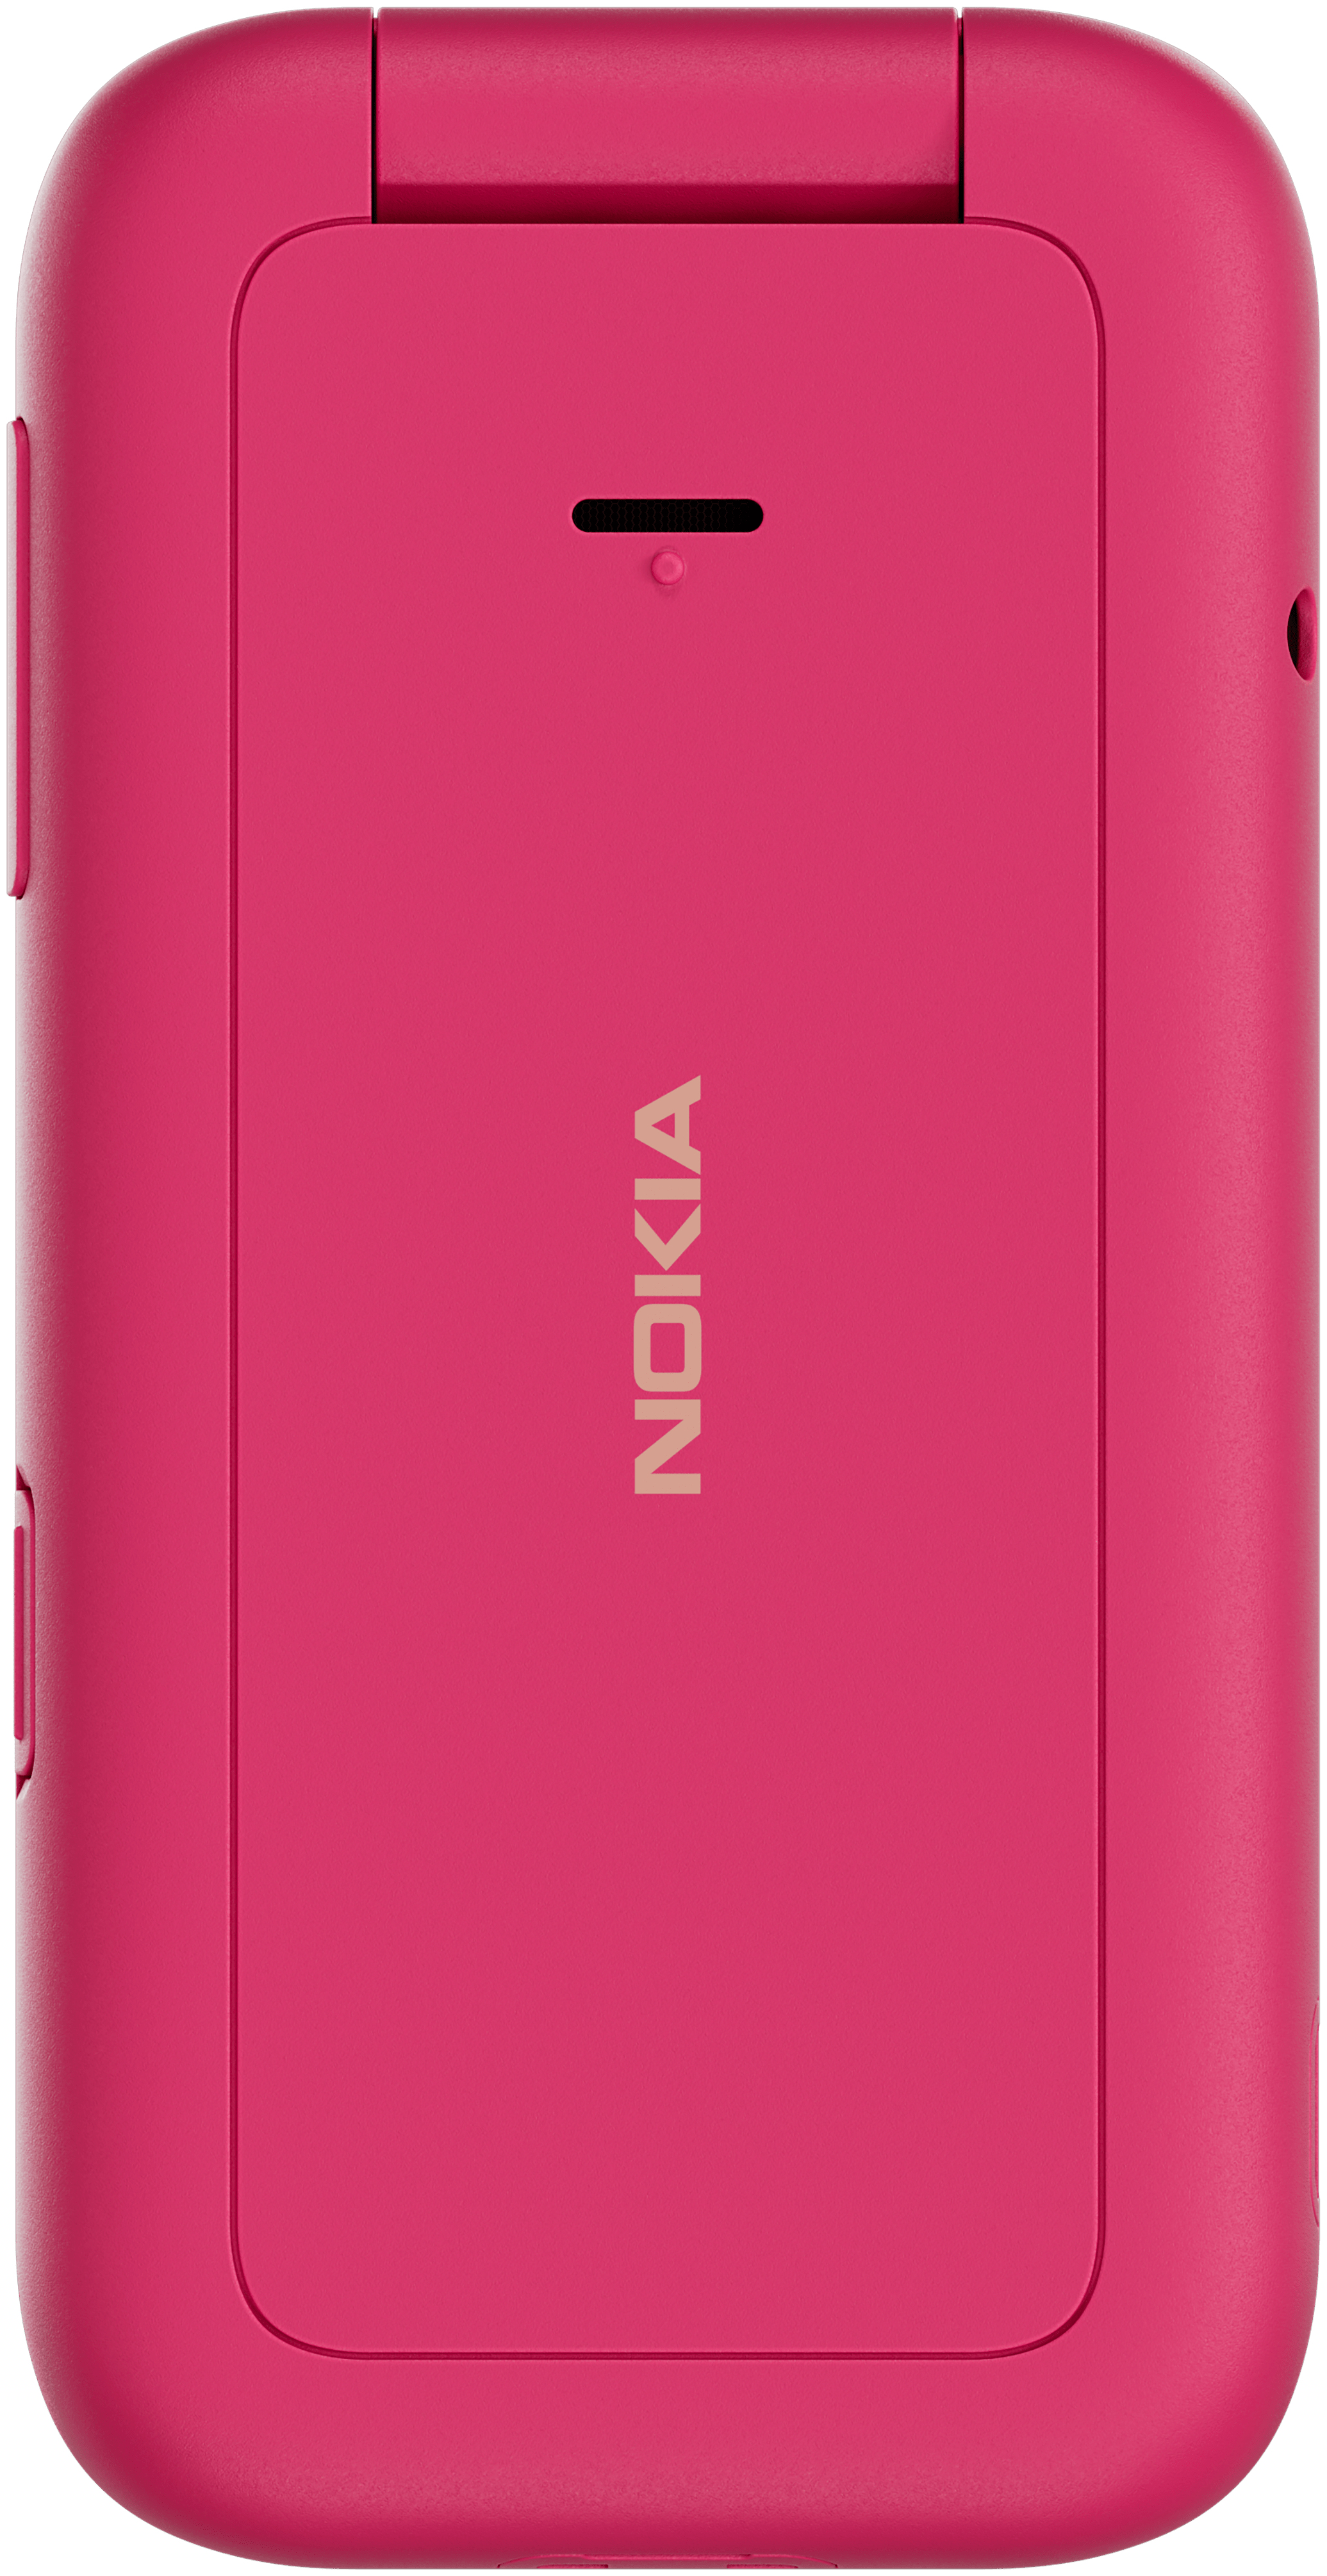 (Pink) Dual Nokia Smartphone 2660 Technomarkt Sim expert von Flip